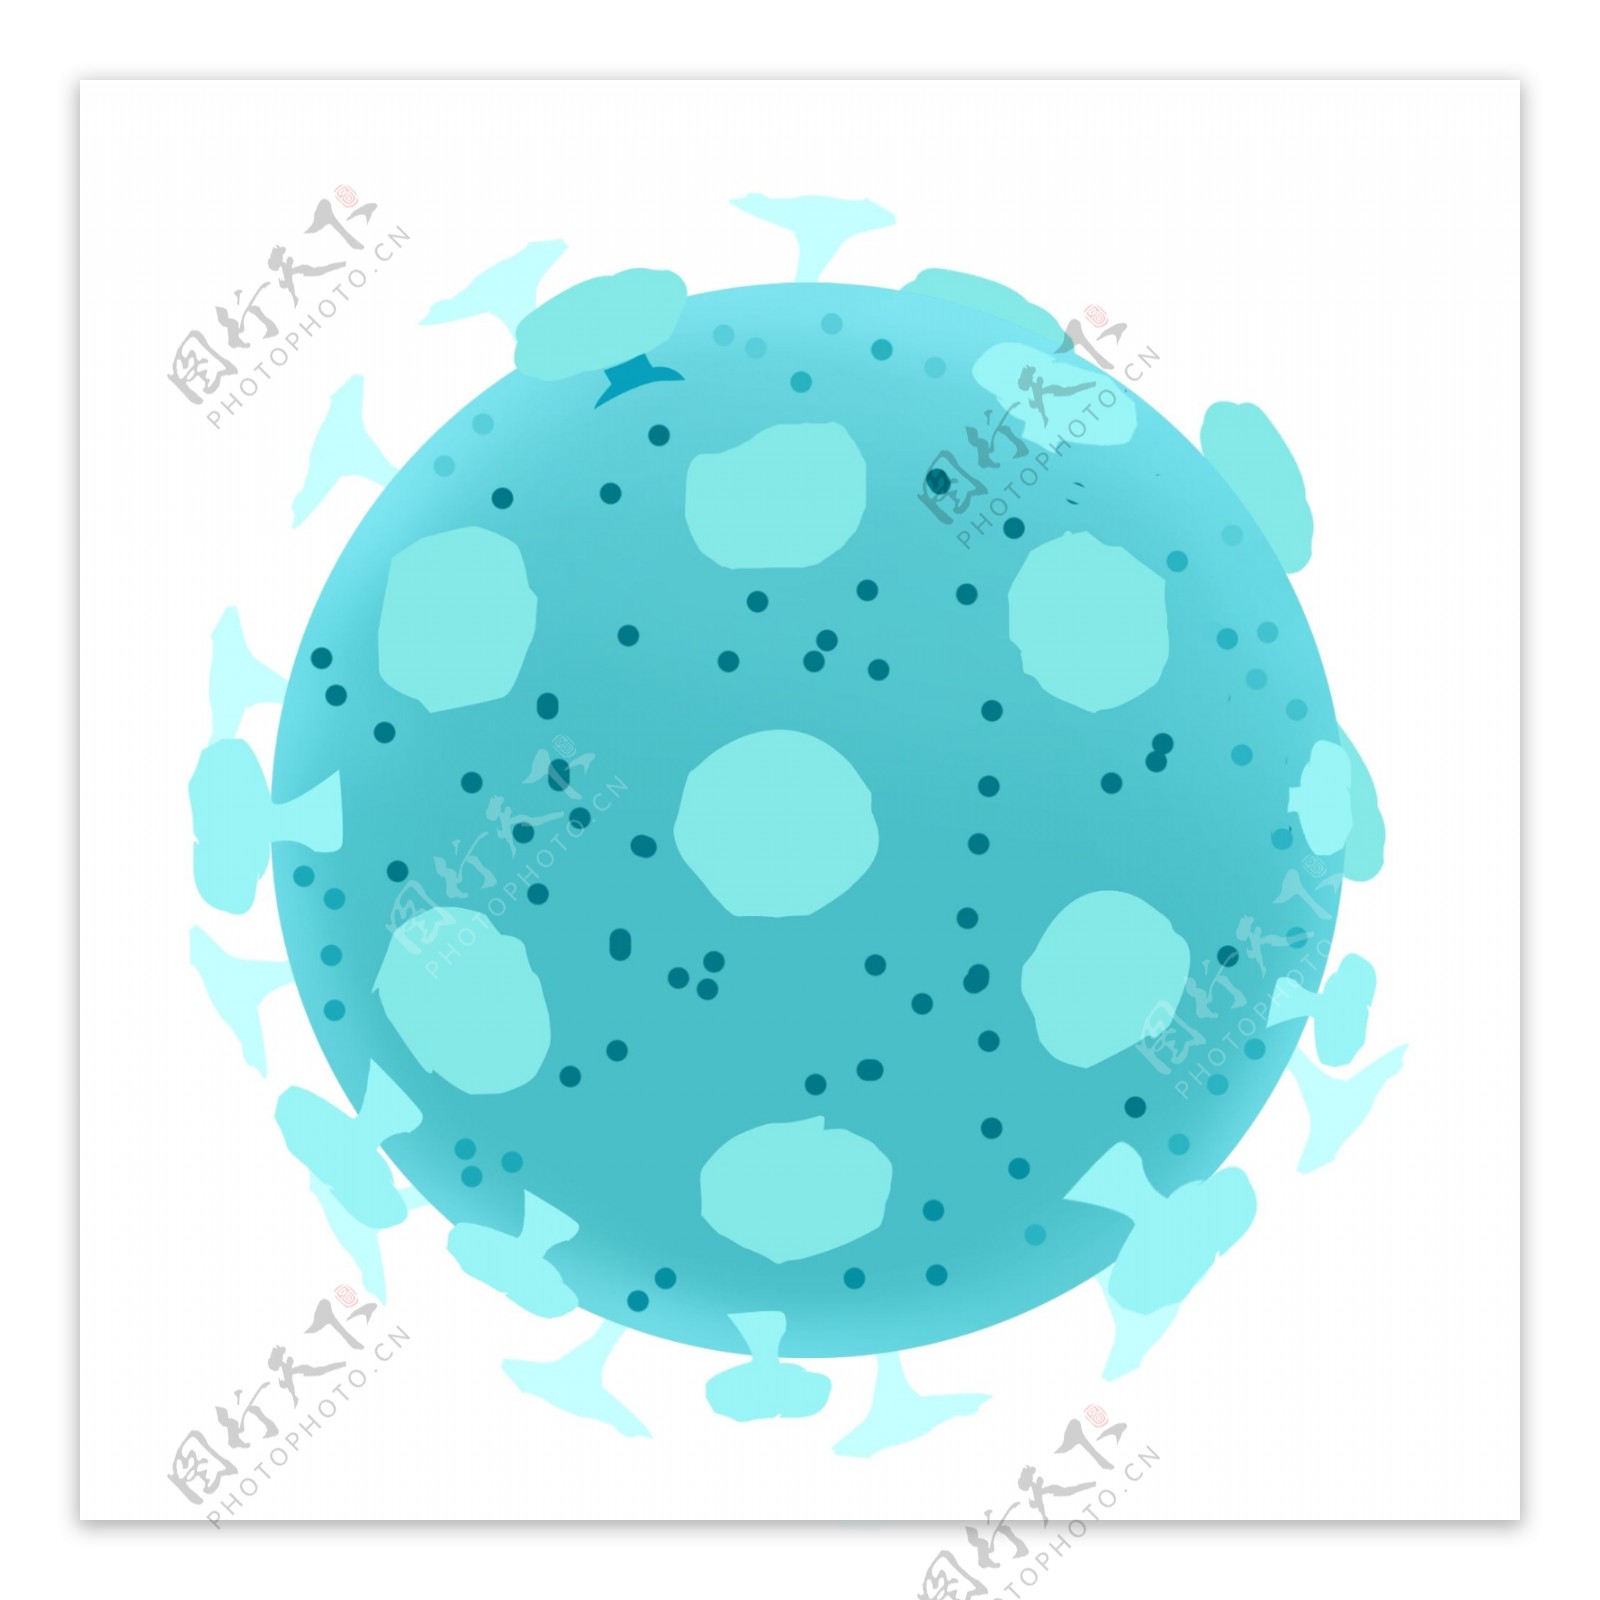 生物细胞非典弄鳞状上皮细胞蓝色